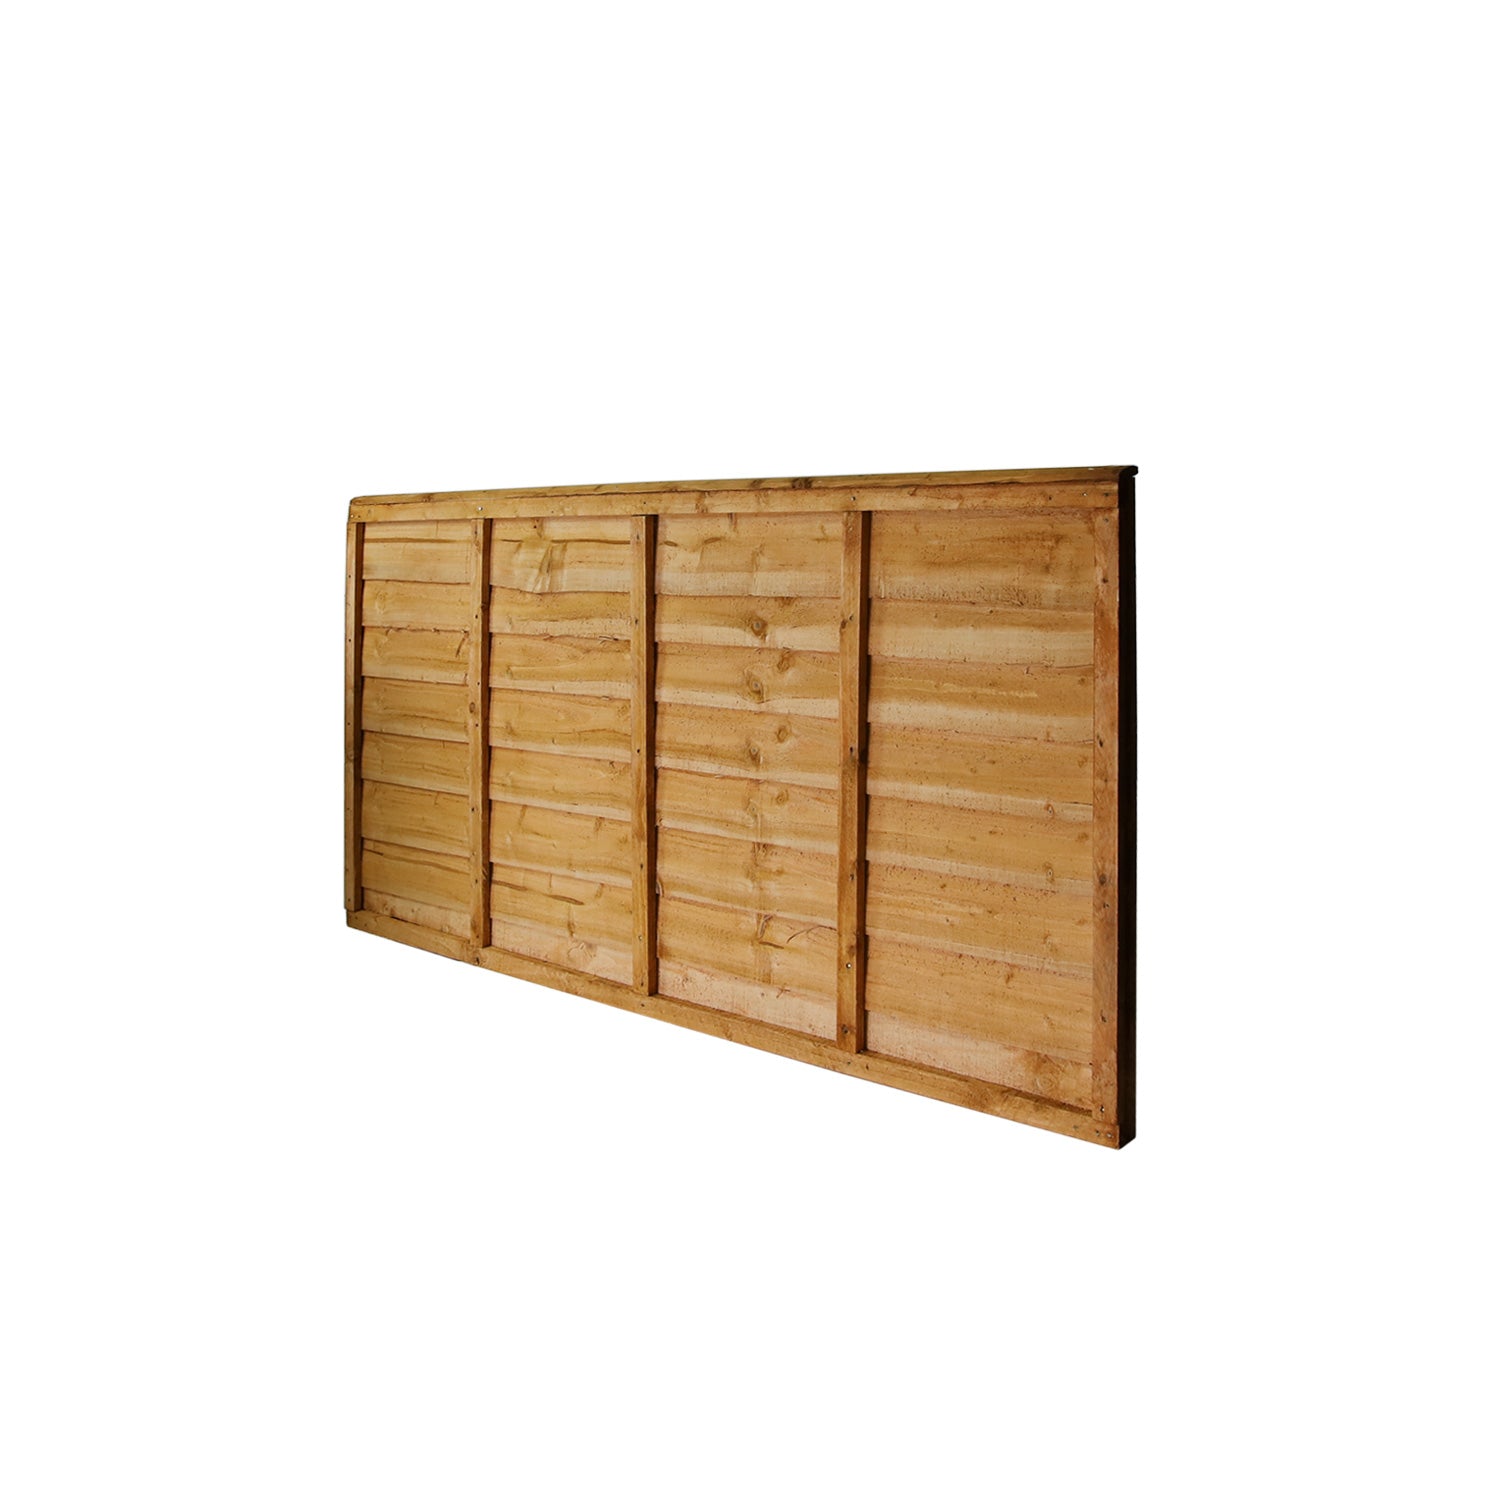 6' x 3' Waney Lap Fence Panel – Discount Builders Merchant